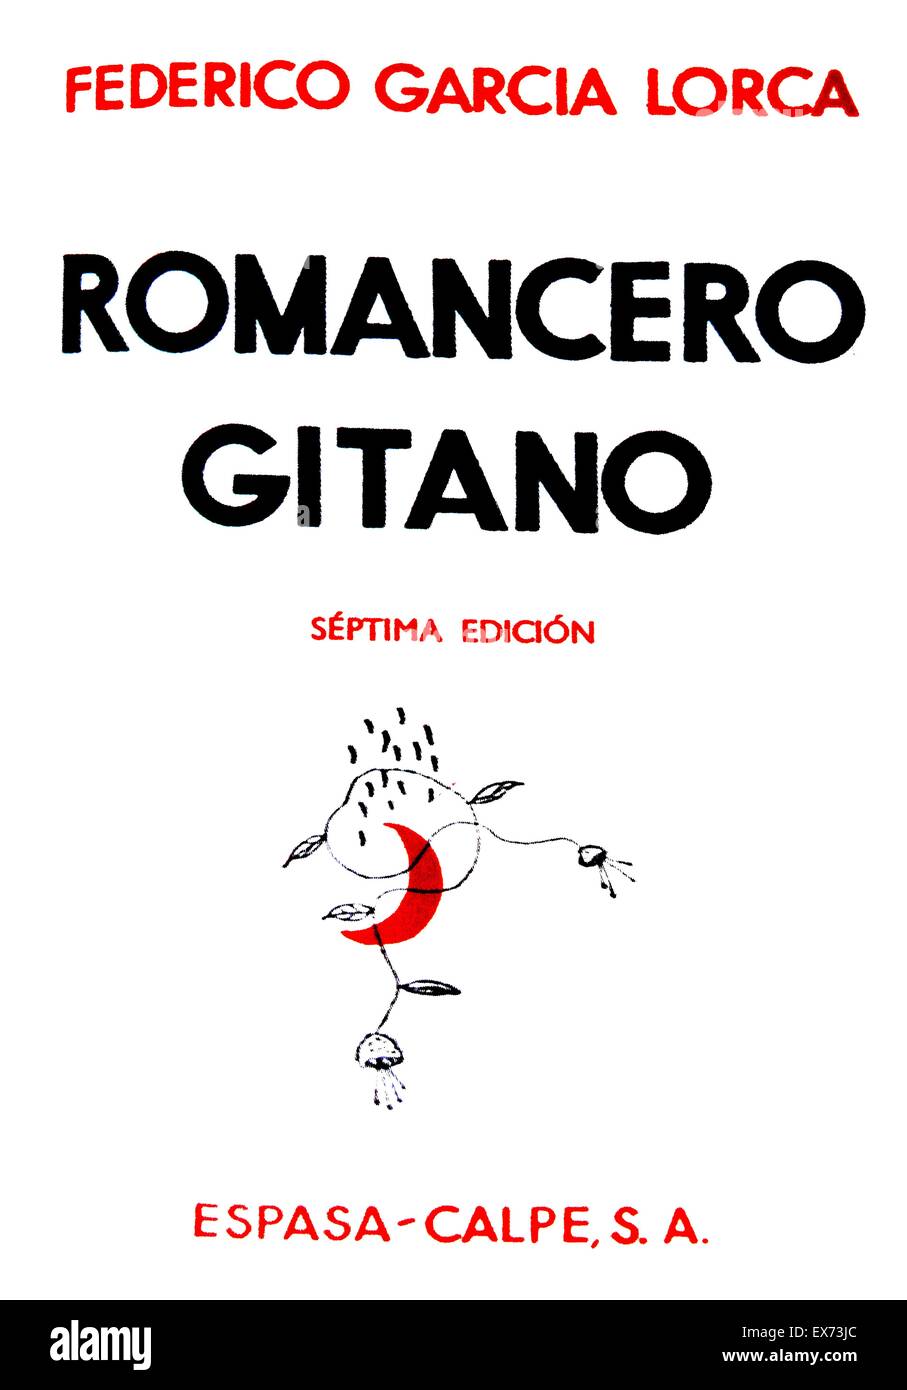 Edizione 1937 di "Romancero gitano" di Federico García Lorca, (1898 - 19 agosto 1936). Lorca fu un poeta spagnolo, eseguita da forze nazionaliste durante la Guerra Civile Spagnola. Ha pubblicato raccolte di poesie tra cui Romancero Gitano (Gypsy ballate, 1928), Foto Stock